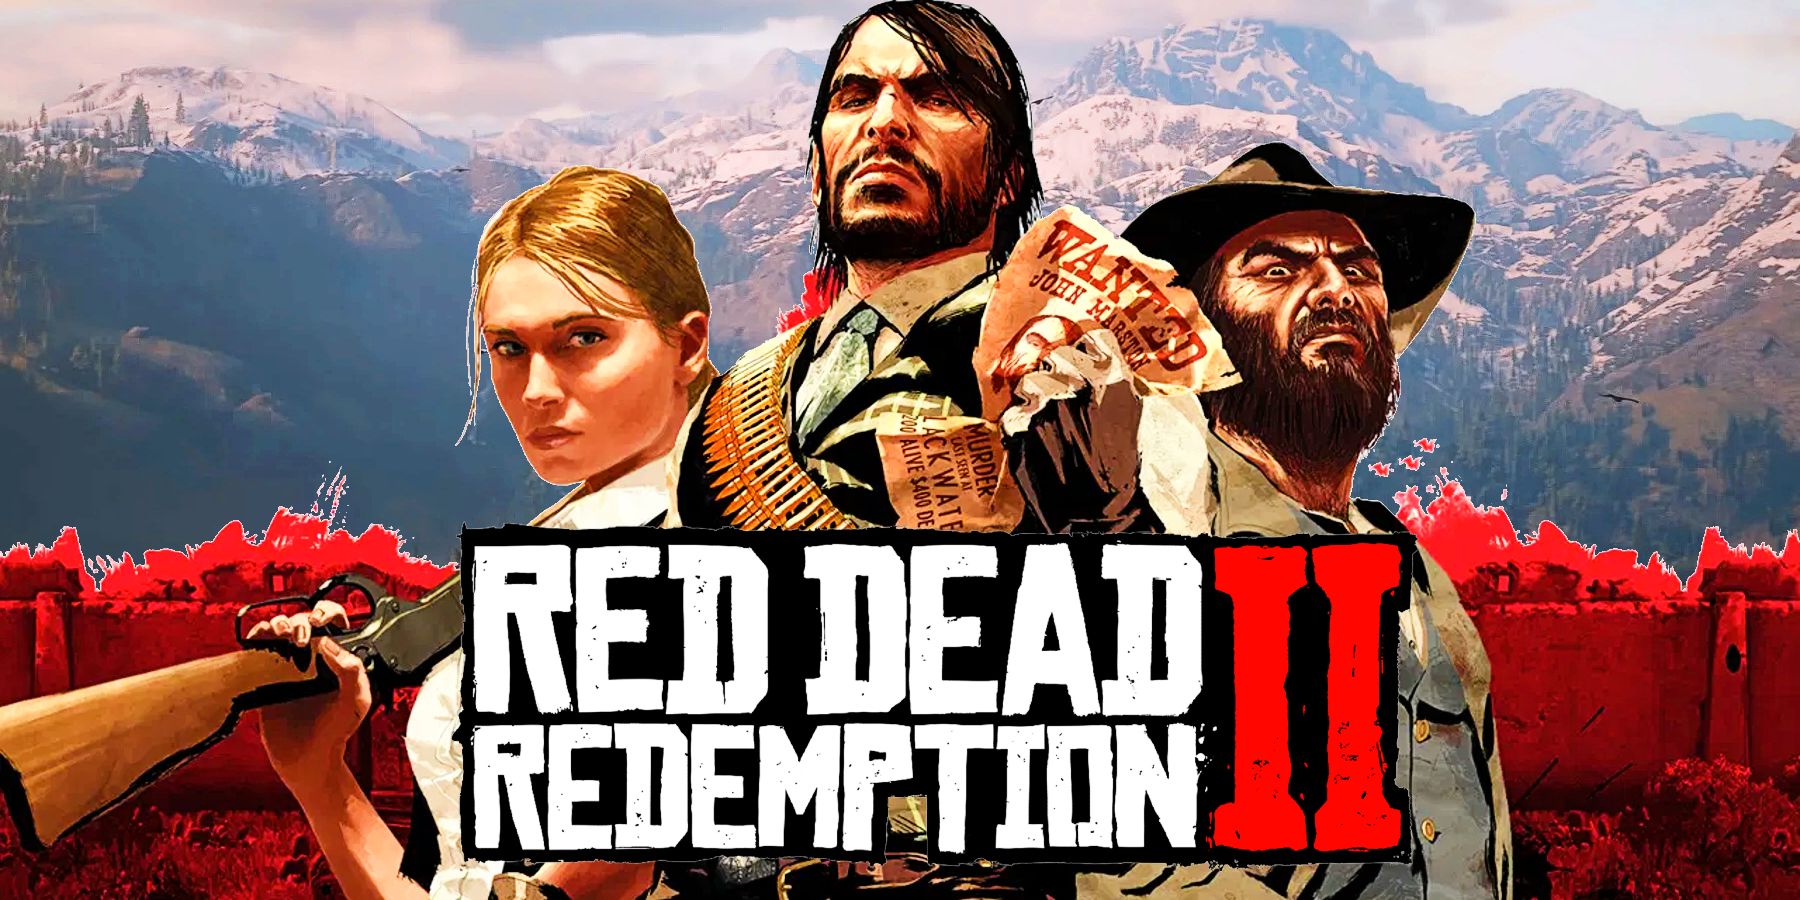 Red Dead Redemption Fan recreates ოფიციალური ეკრანის პირდაპირი გაგრძელებაა